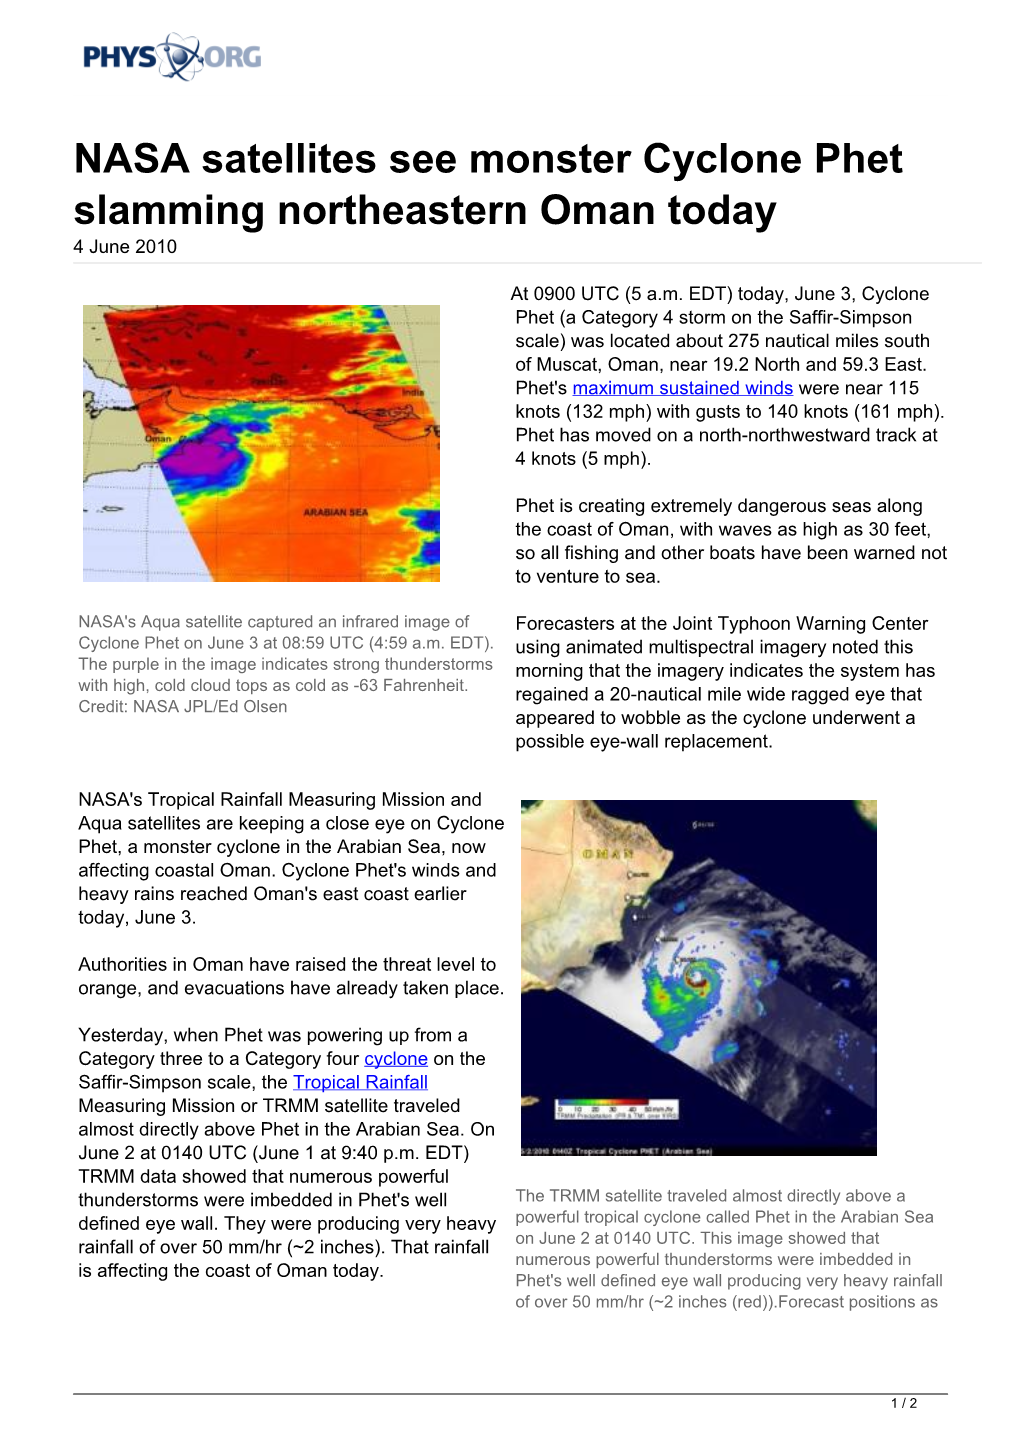 NASA Satellites See Monster Cyclone Phet Slamming Northeastern Oman Today 4 June 2010